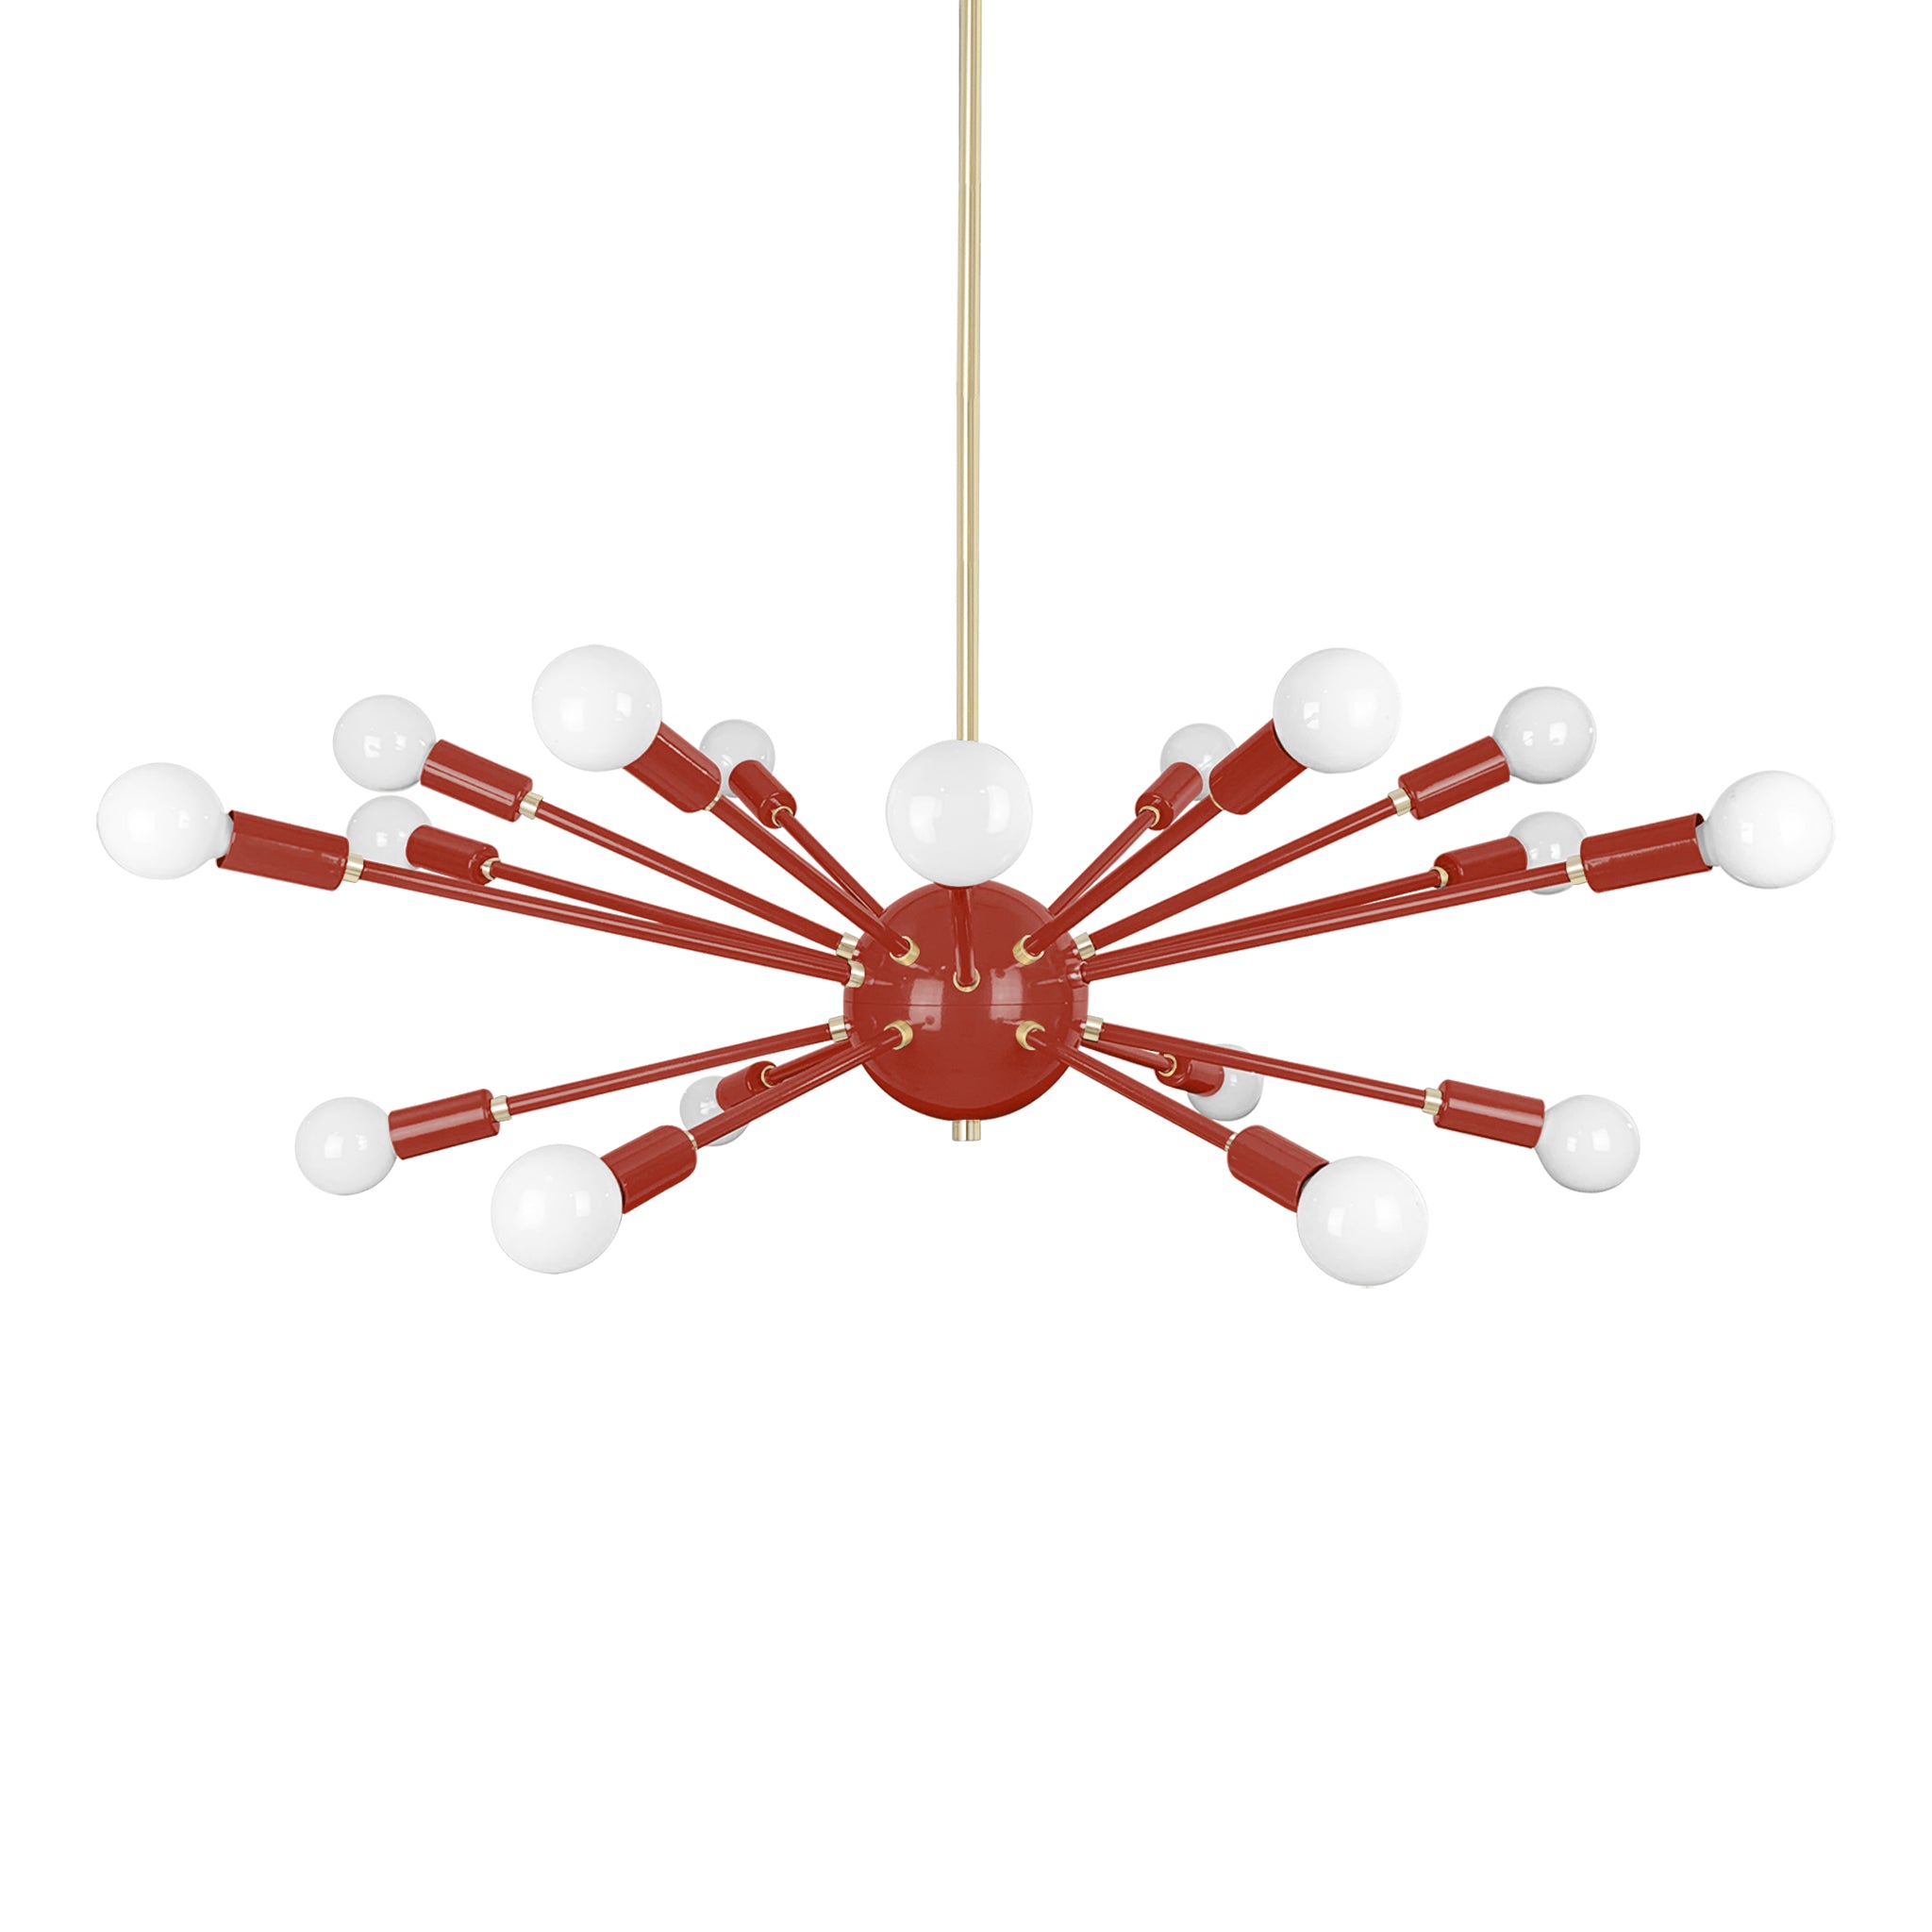 Brass and riding hood red color Elliptical Sputnik chandelier 32" Dutton Brown lighting